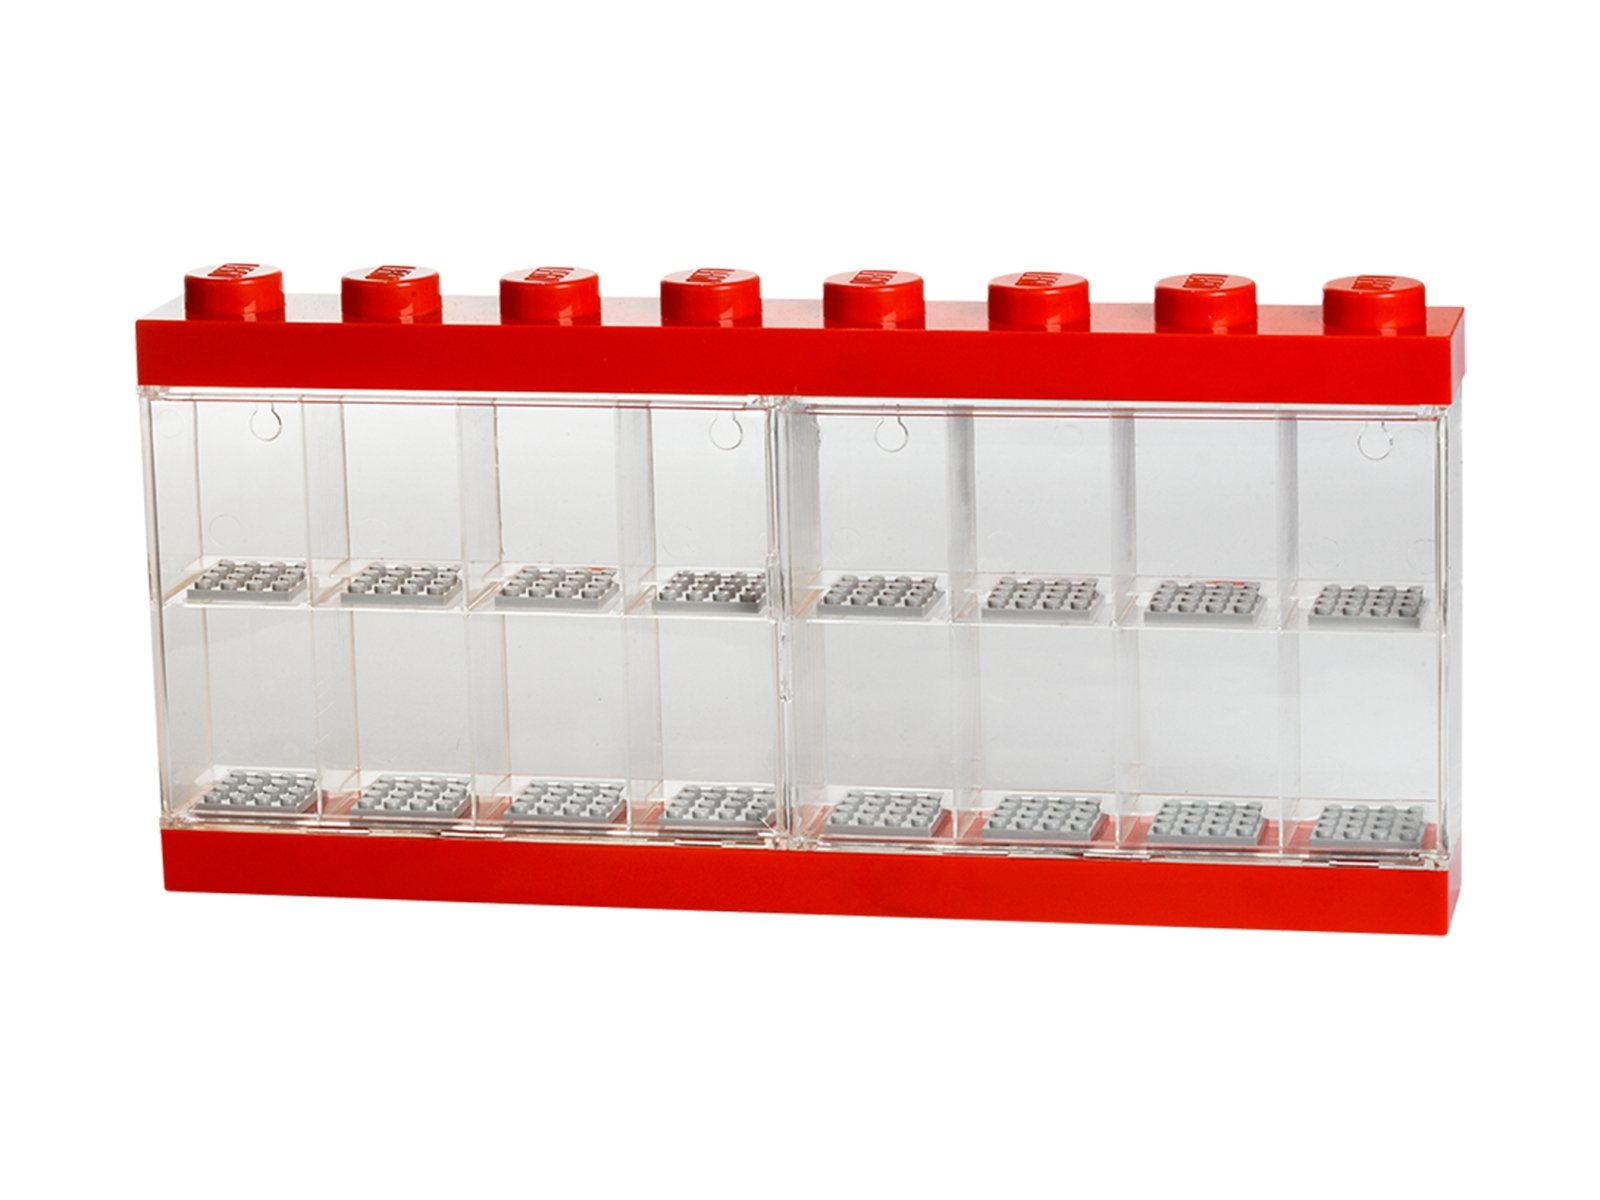 LEGO 5006154 Gablotka na 16 minifigurek – czerwona